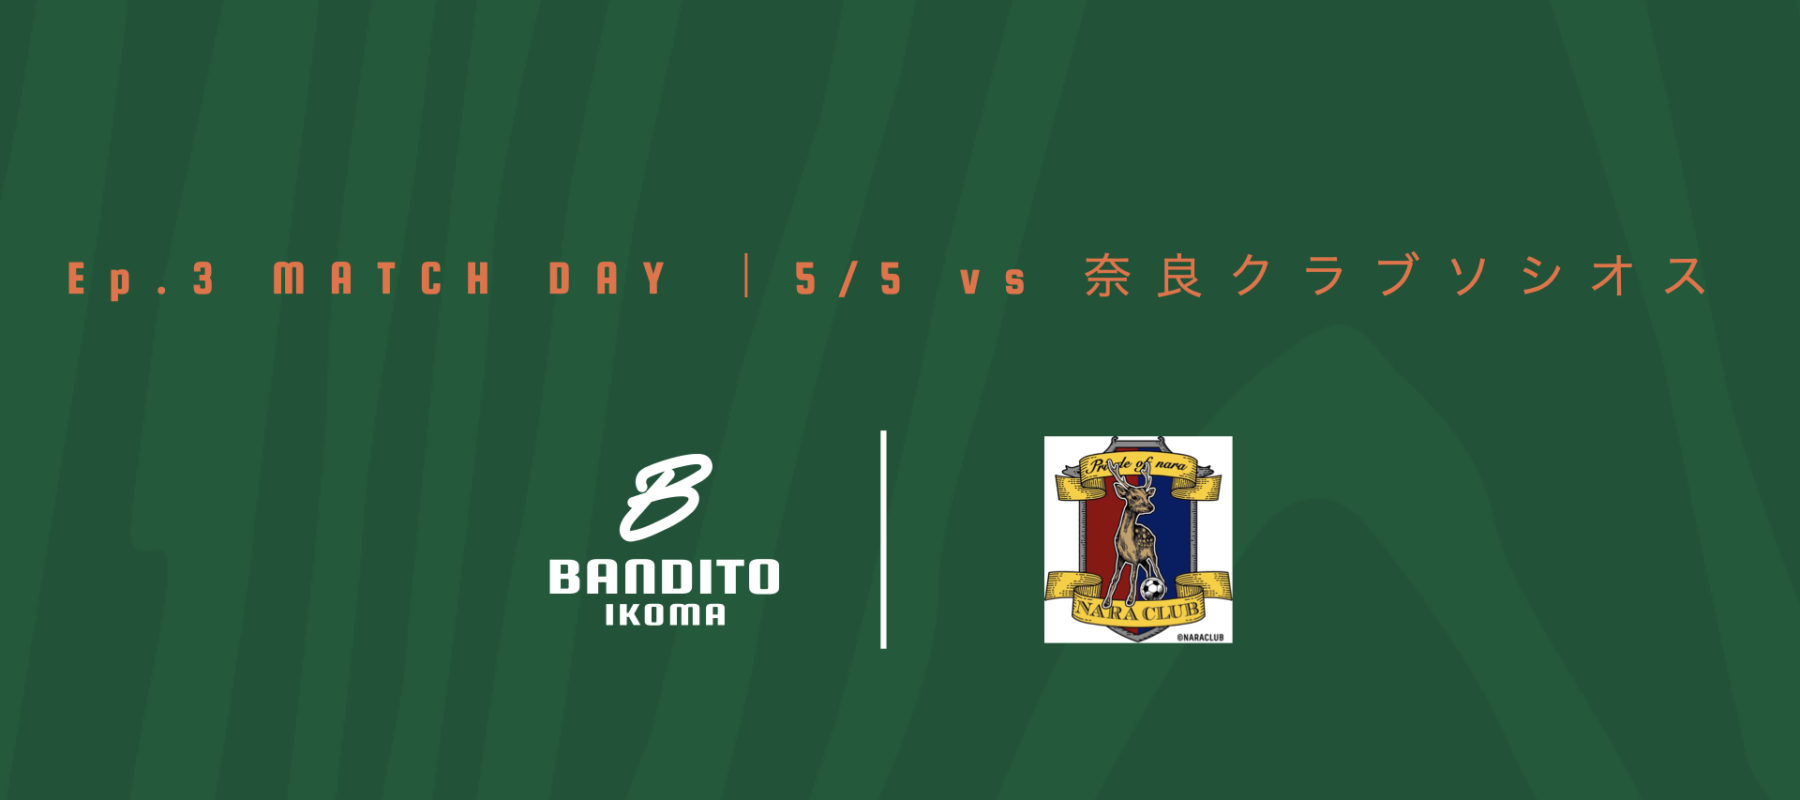 Ep.3 MATCH DAY ｜5/5 vs 奈良クラブソシオス